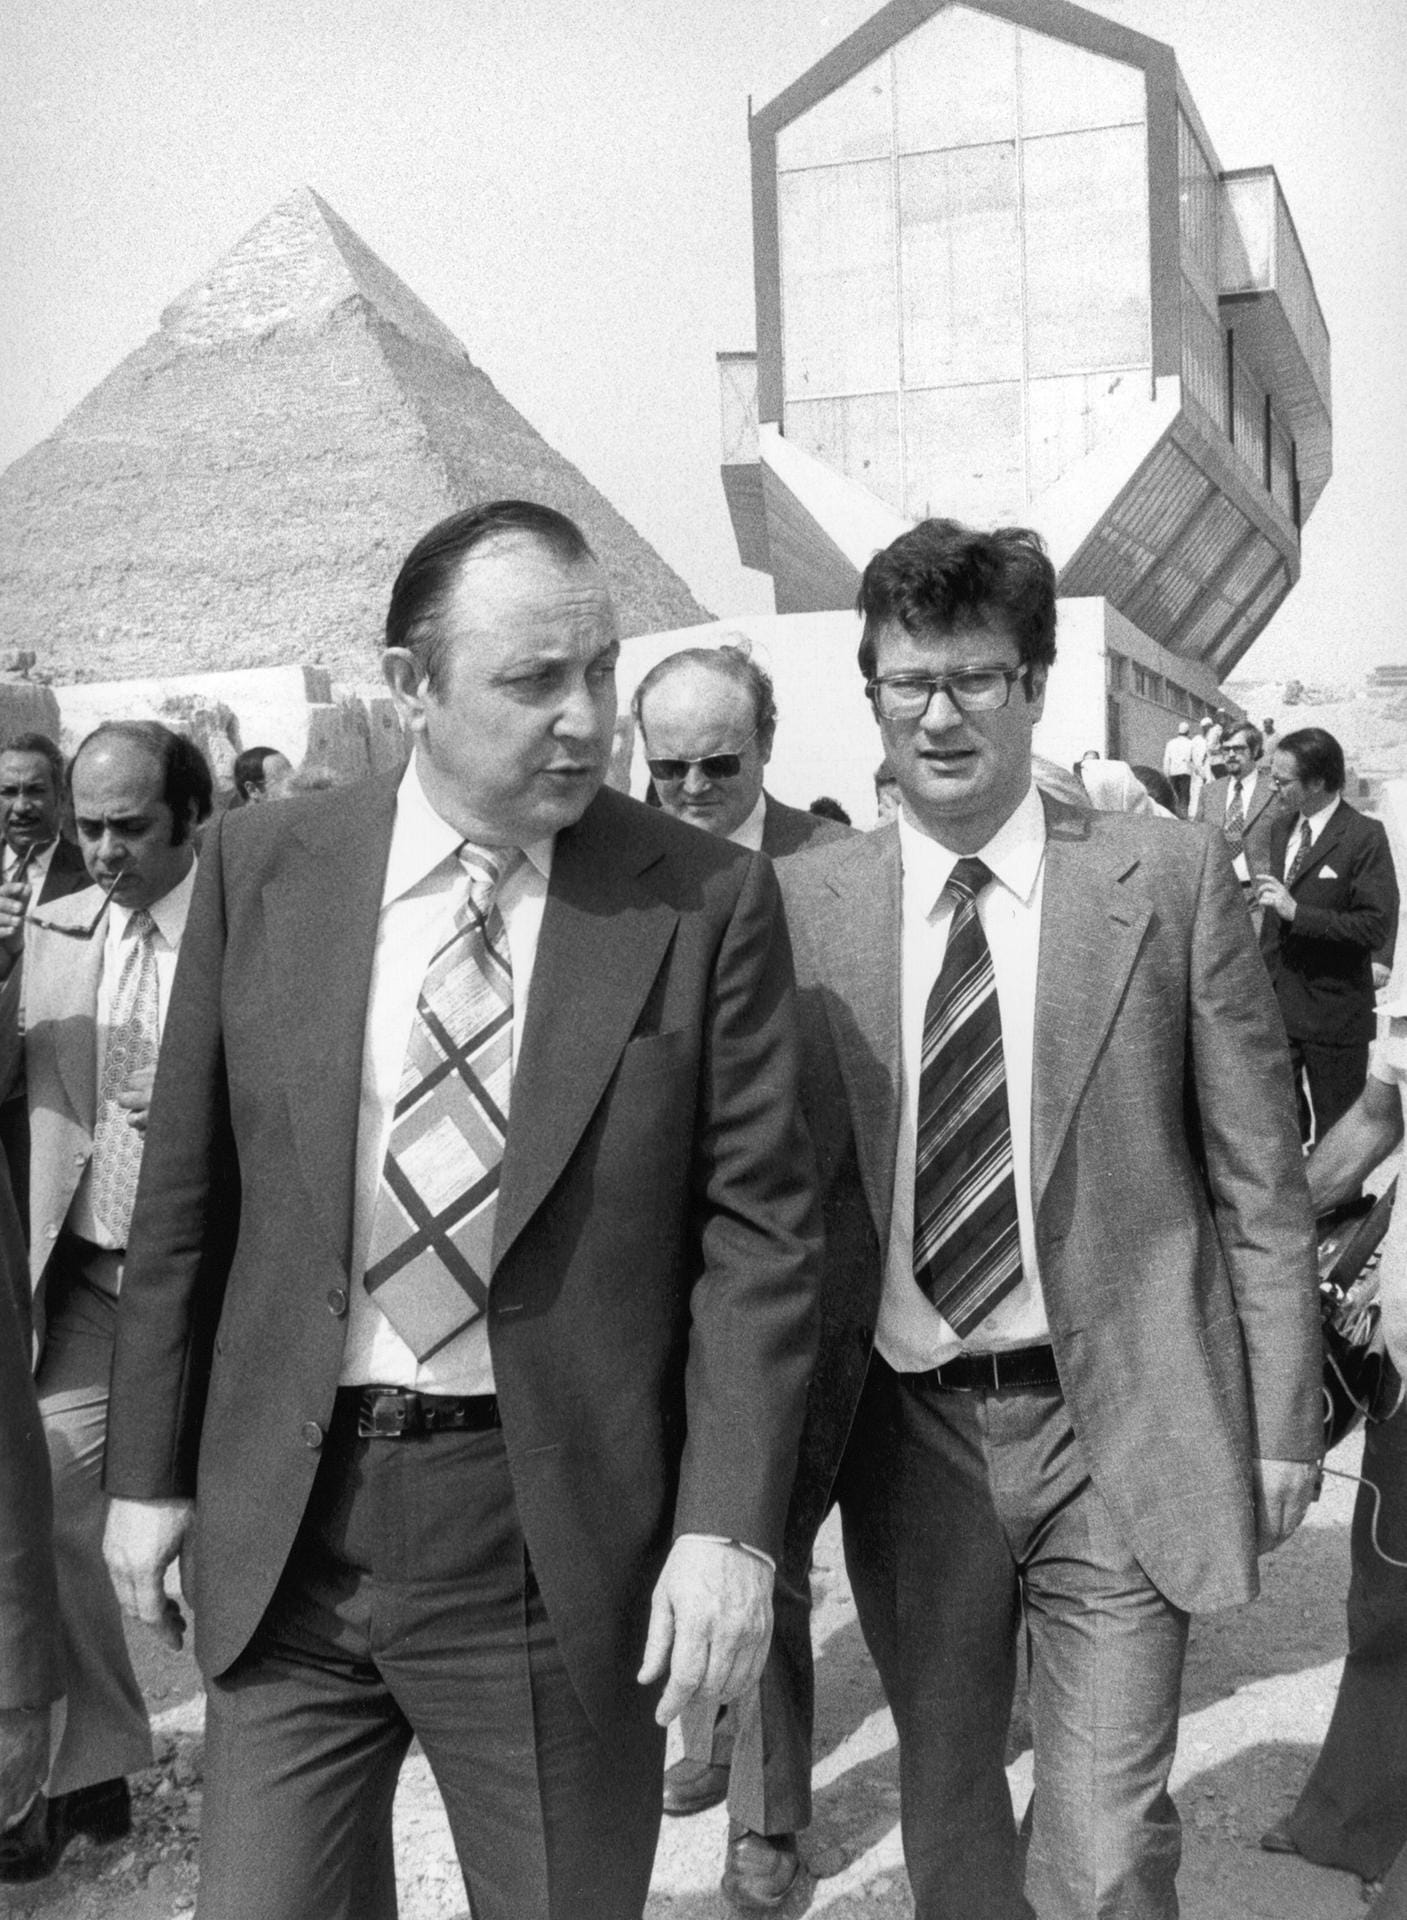 1975 in Ägypten: Außenminister Hans-Dietrich Genscher besucht die Pyramiden von Gizeh. Mit dabei auch Klaus Kinkel (re.) der damals Leiter des Leitungsstabes des Auswärtigen Amtes war.